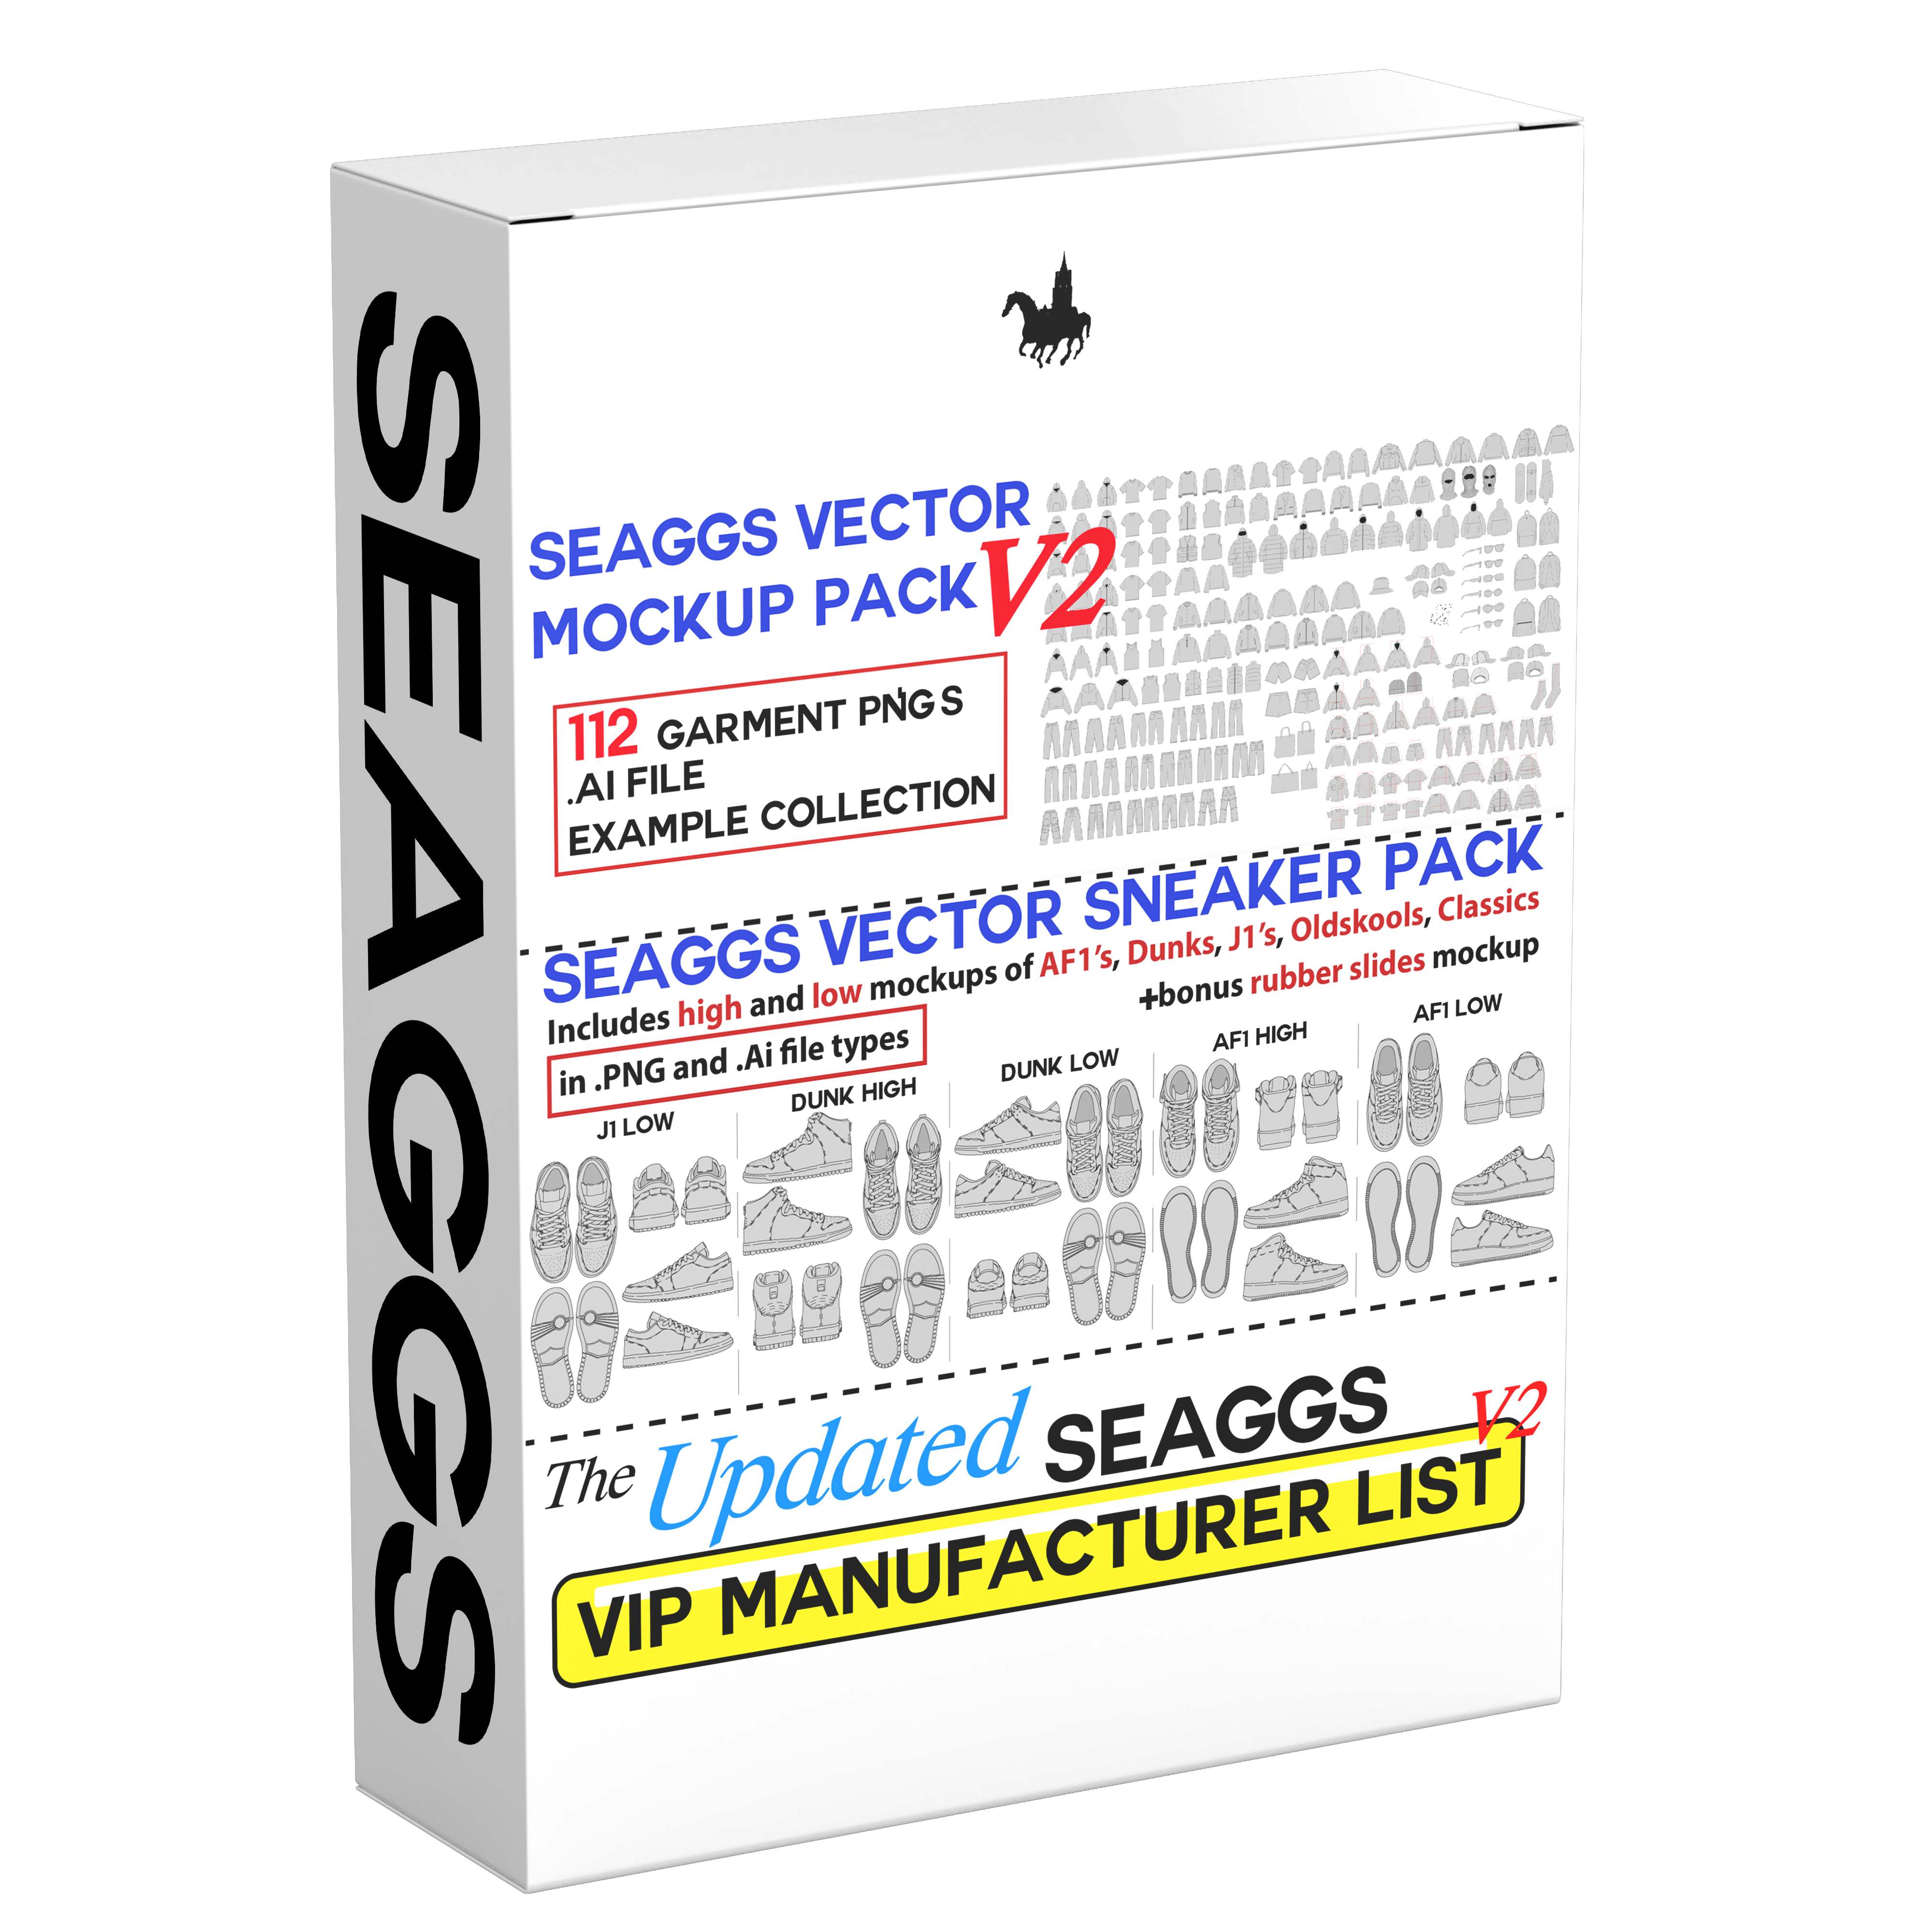 Seaggs Super Bundle (Vector V2 Mockups + Sneaker Mockups + VIP Manufacturer List)